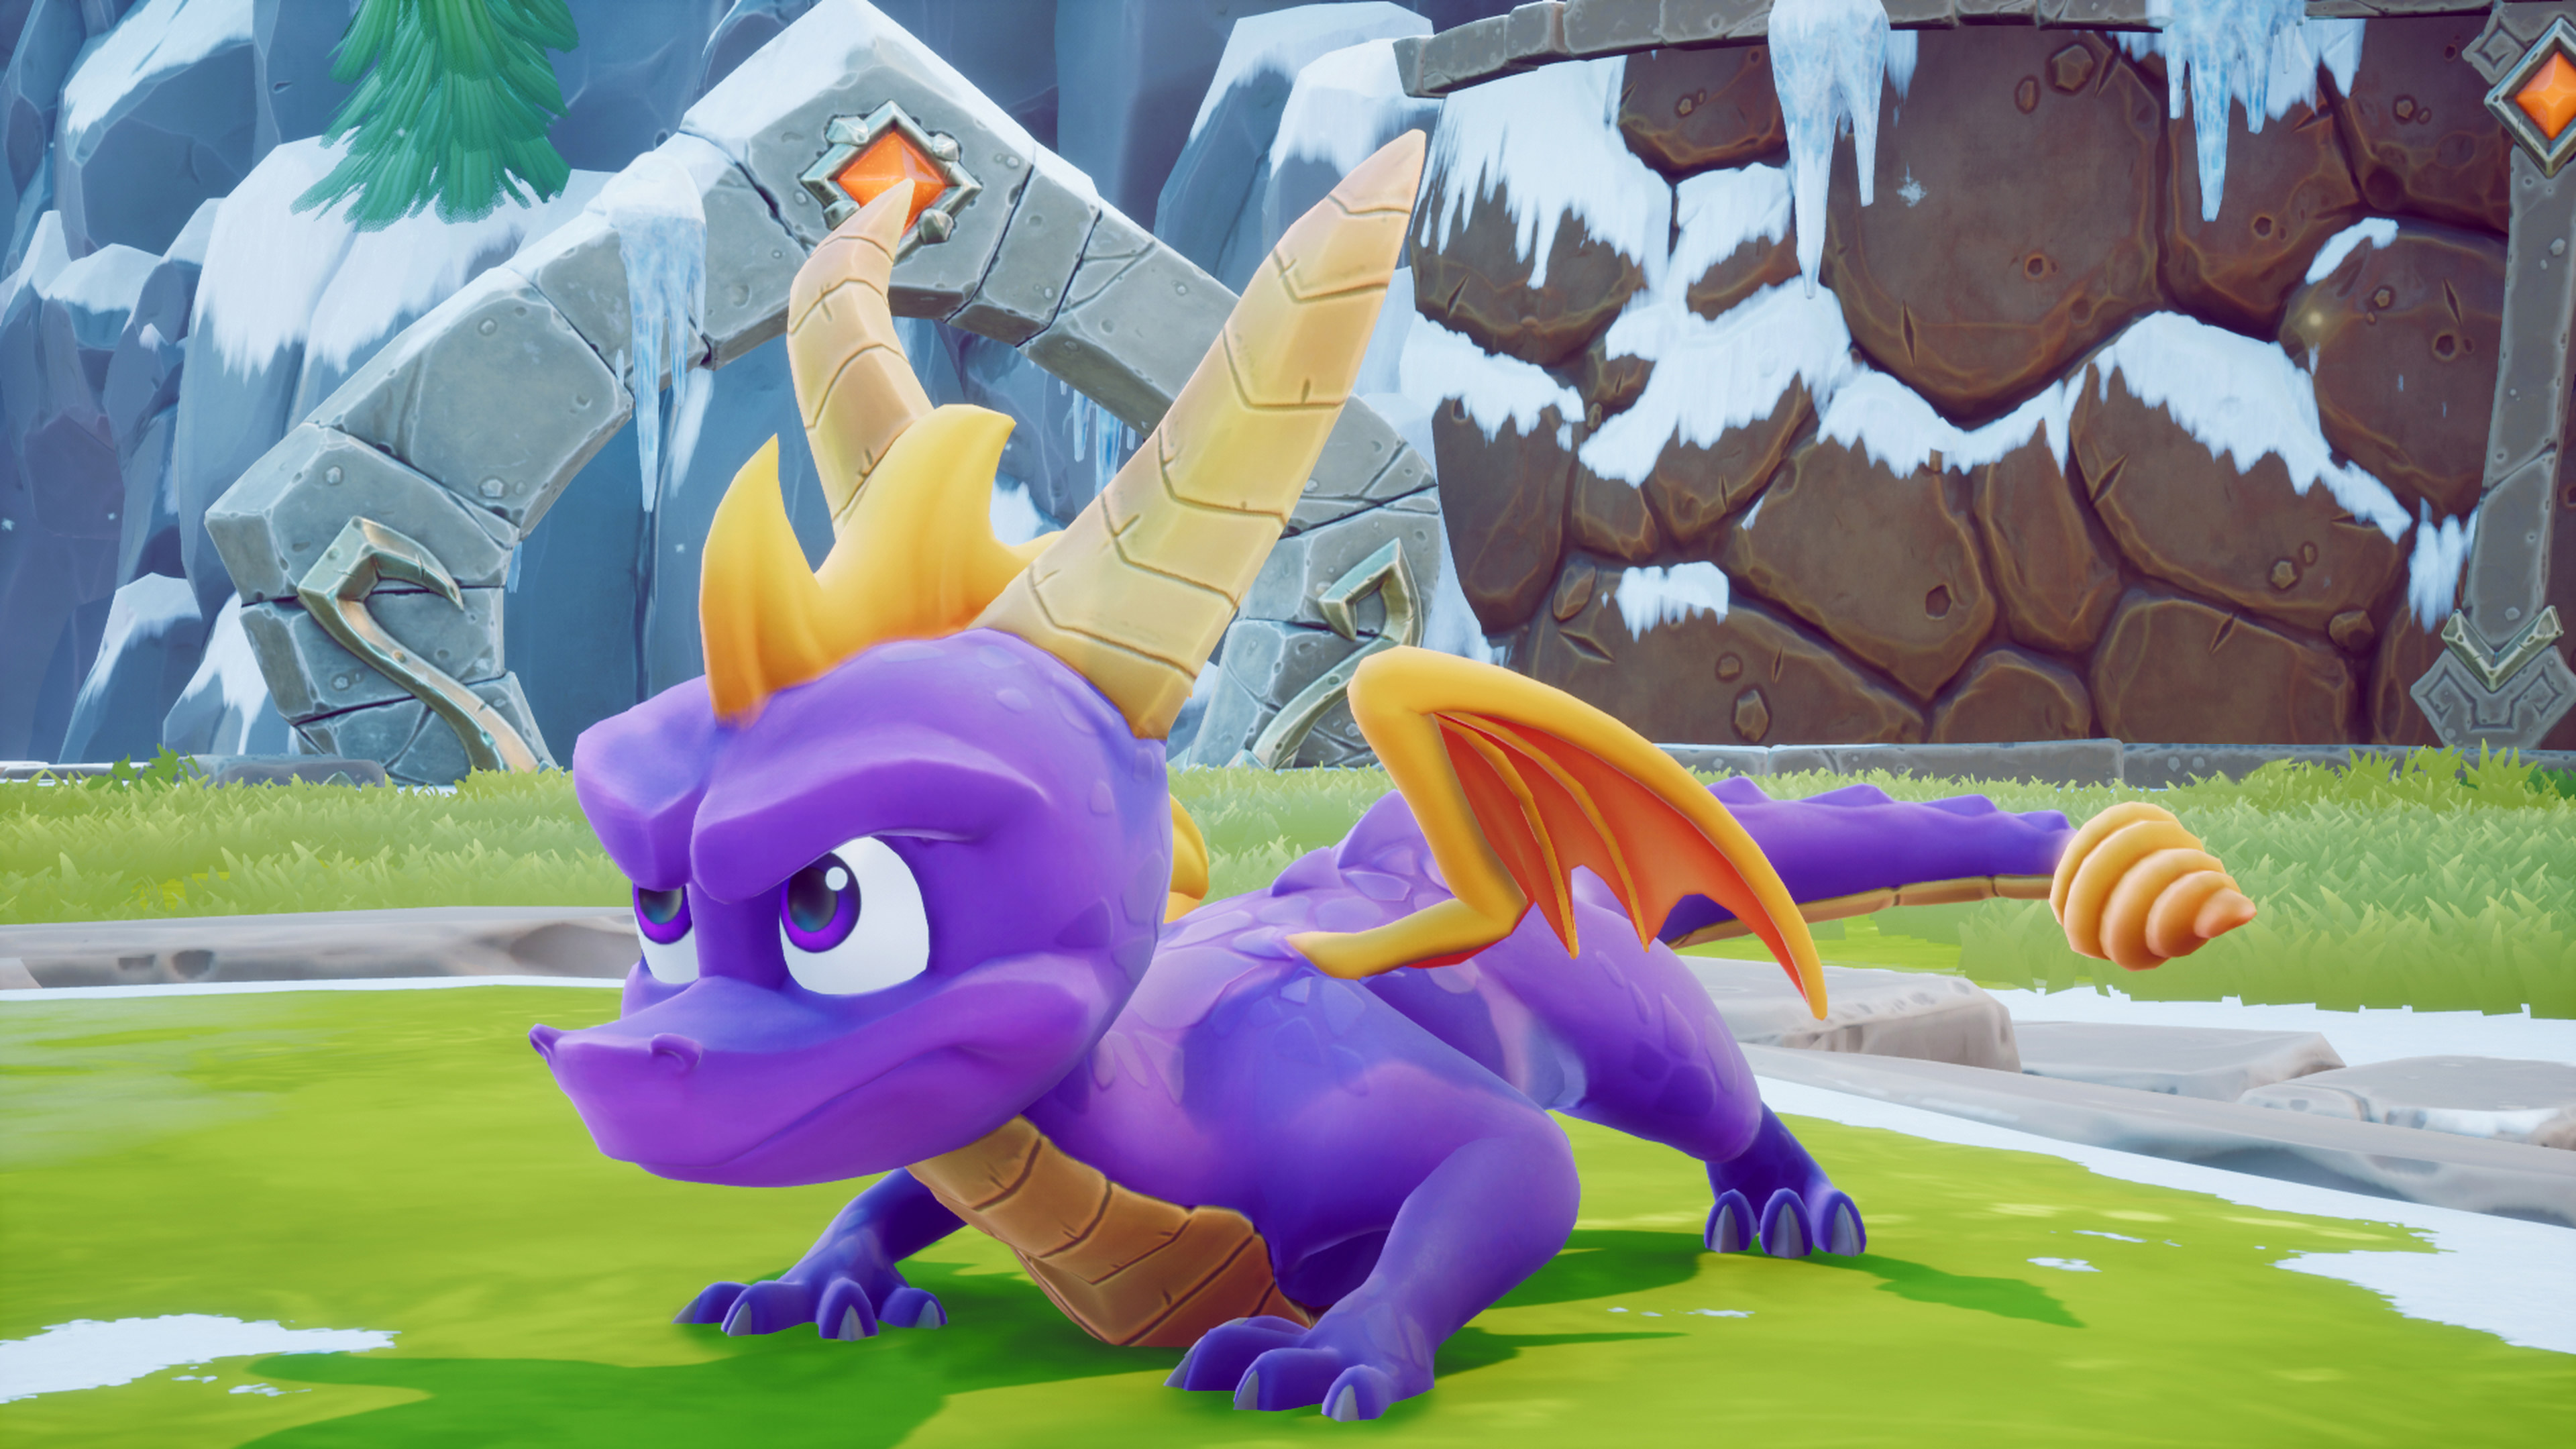 Spyro the Dragon, fond d'écran officiel